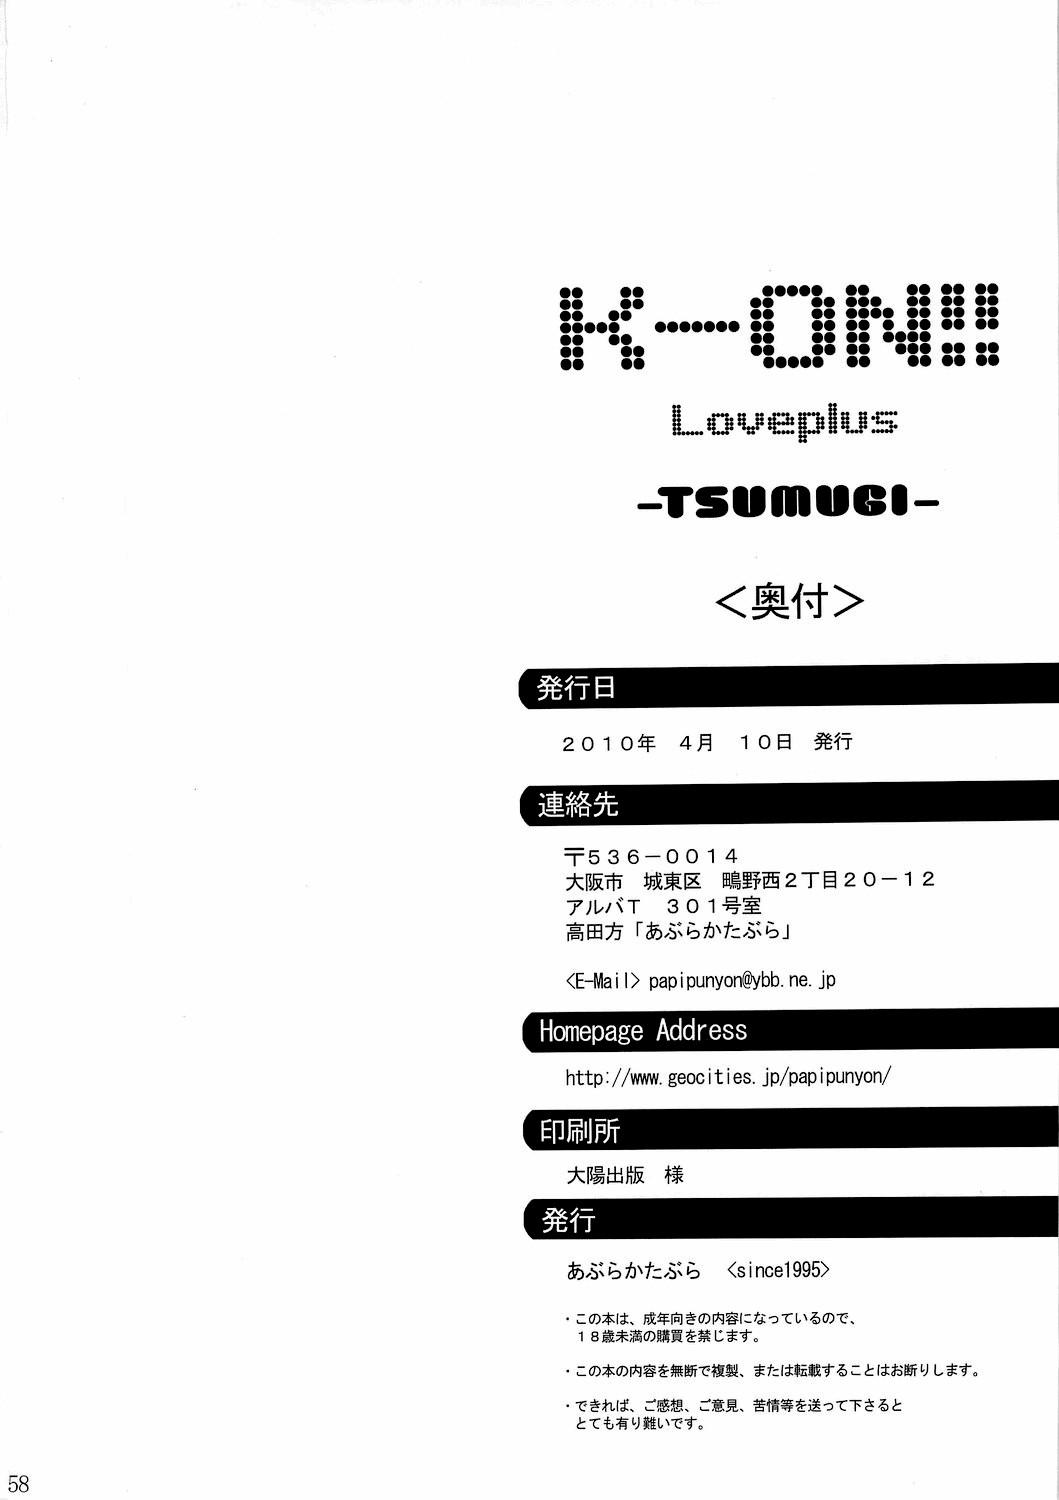 Private [Abura Katabura (Papipunyon)] K-ON!! Loveplus-TSUMUGI- (K-ON!) - K-on Behind - Page 58